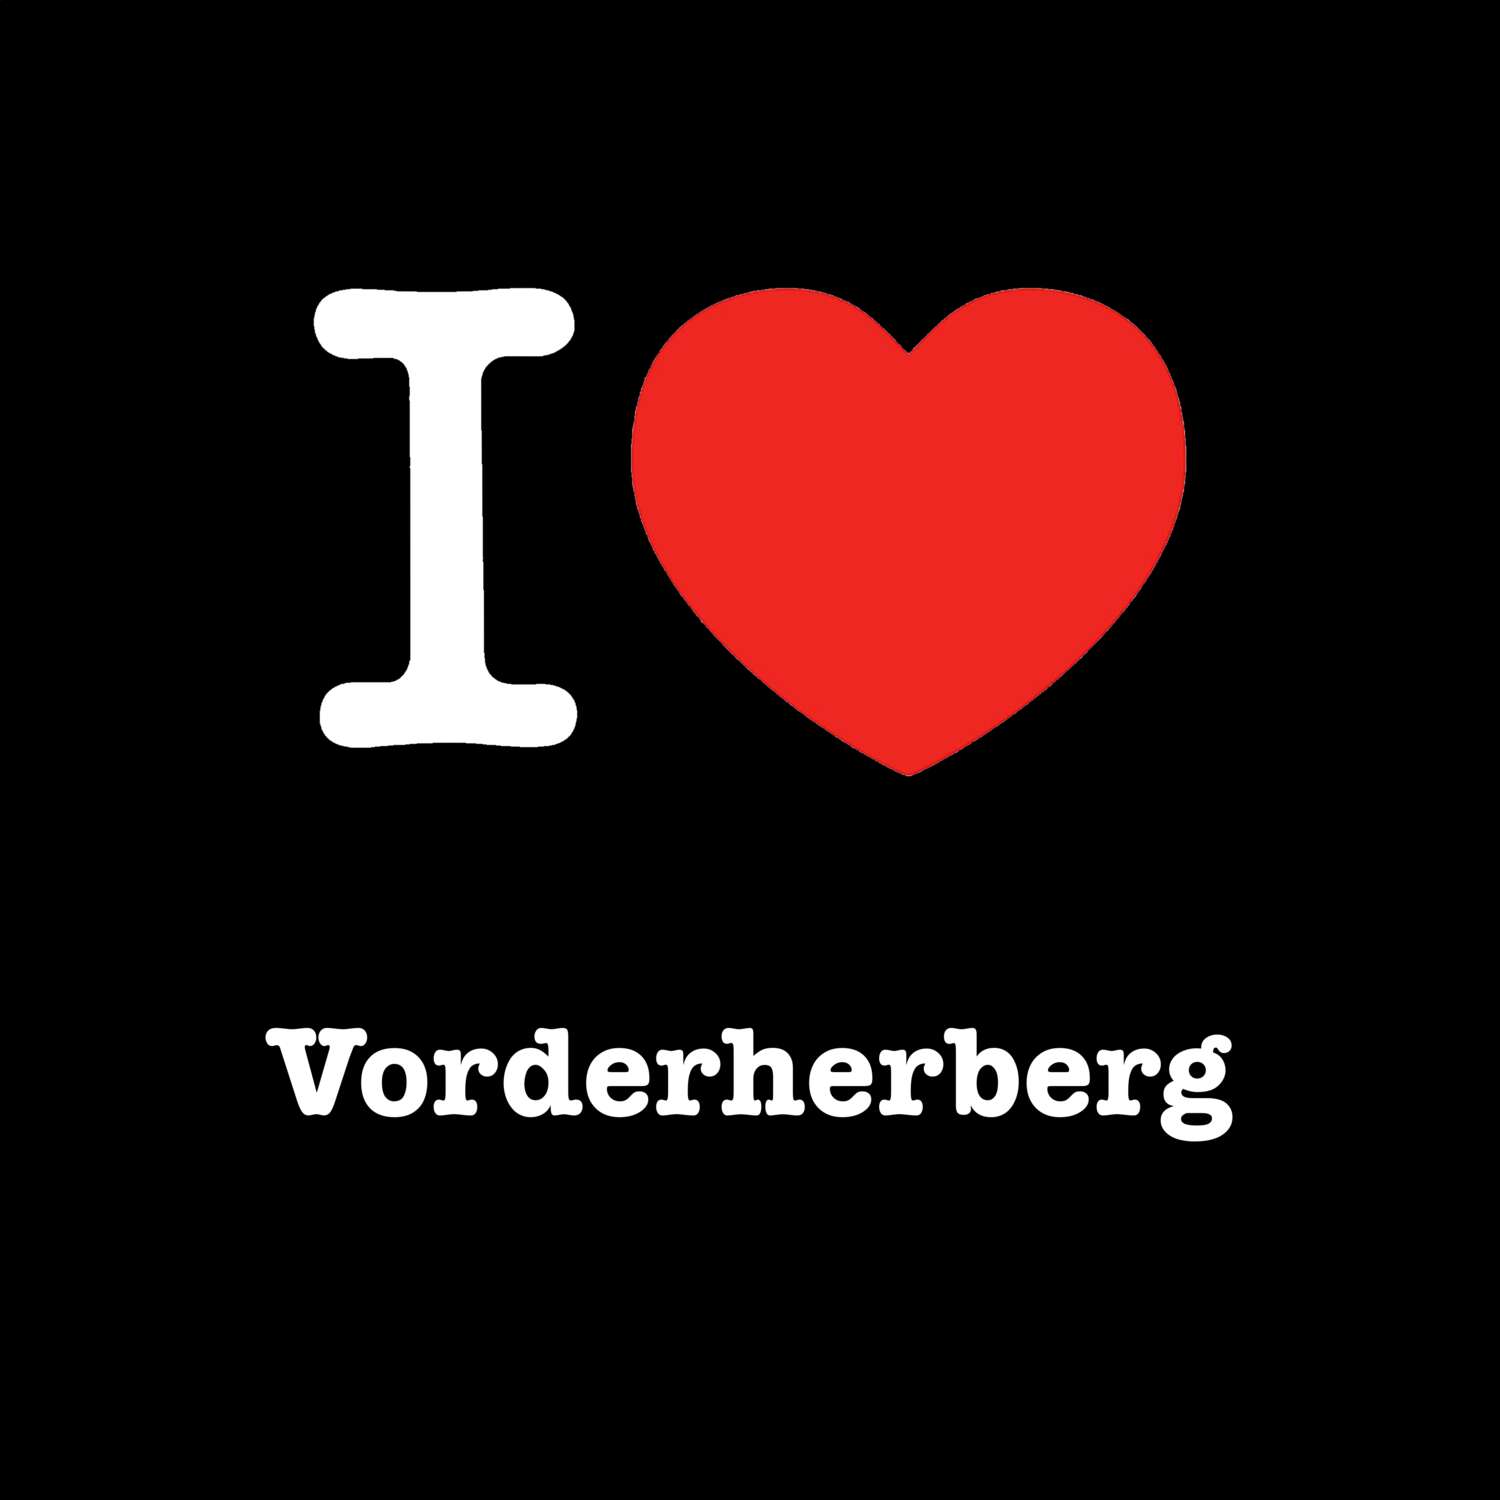 Vorderherberg T-Shirt »I love«